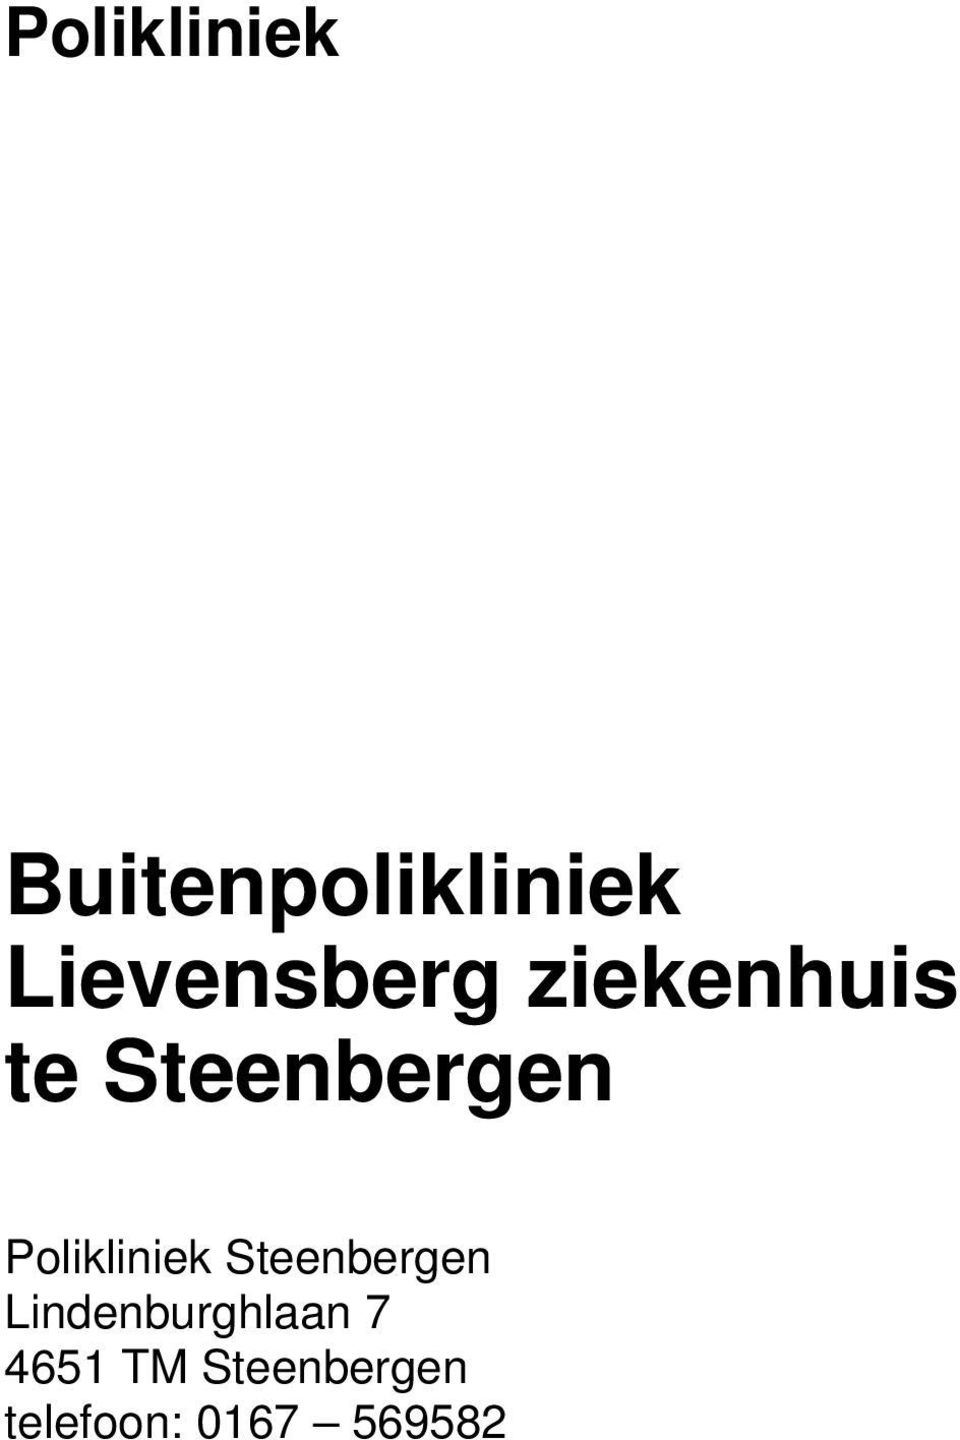 Polikliniek Steenbergen